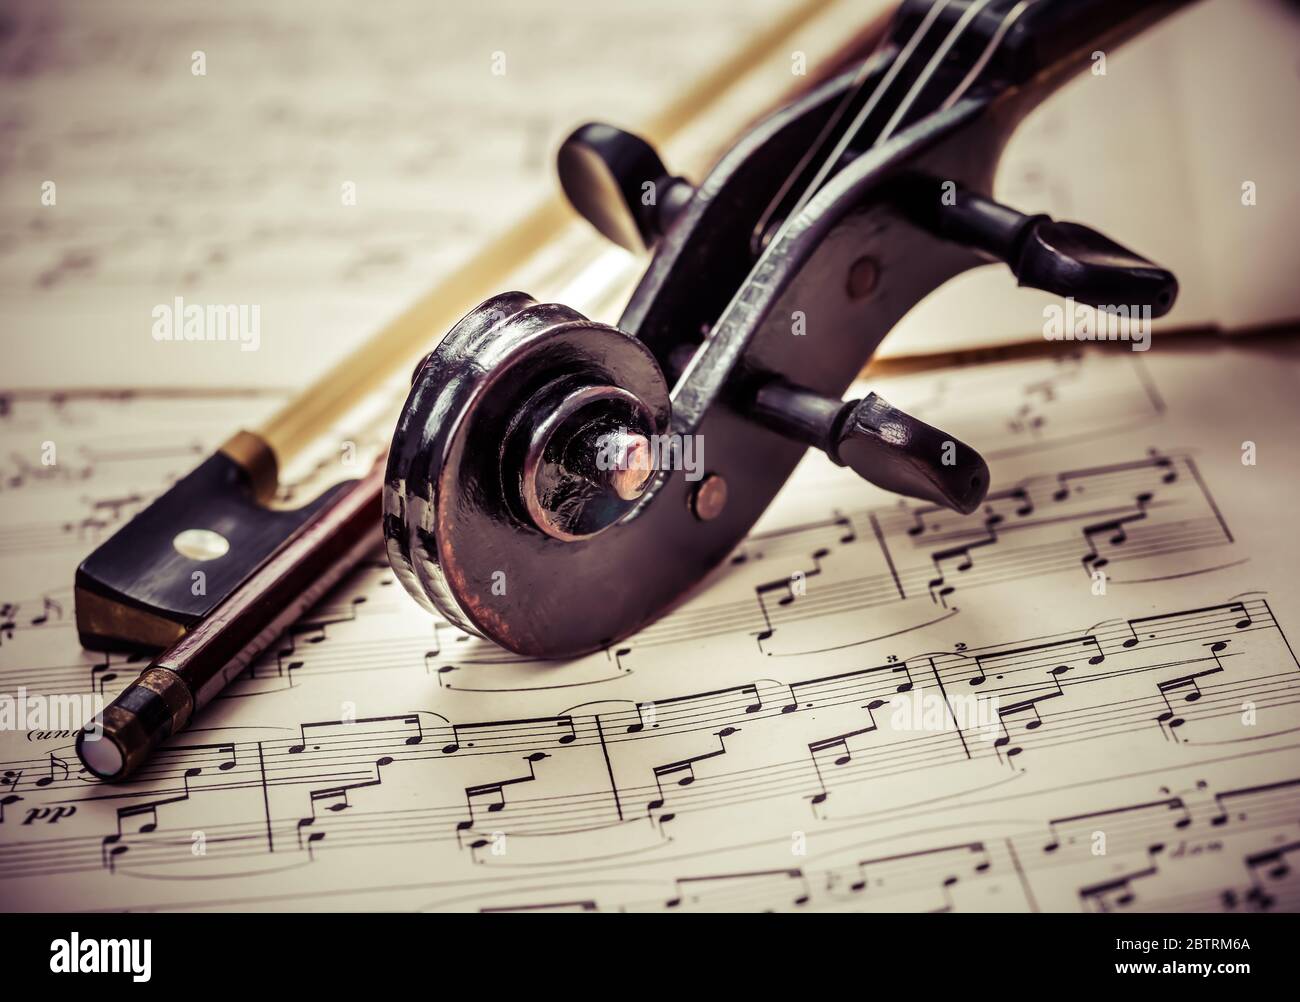 Dettaglio del vecchio violino con fiddlestick sulle note musicali in un look vintage Foto Stock